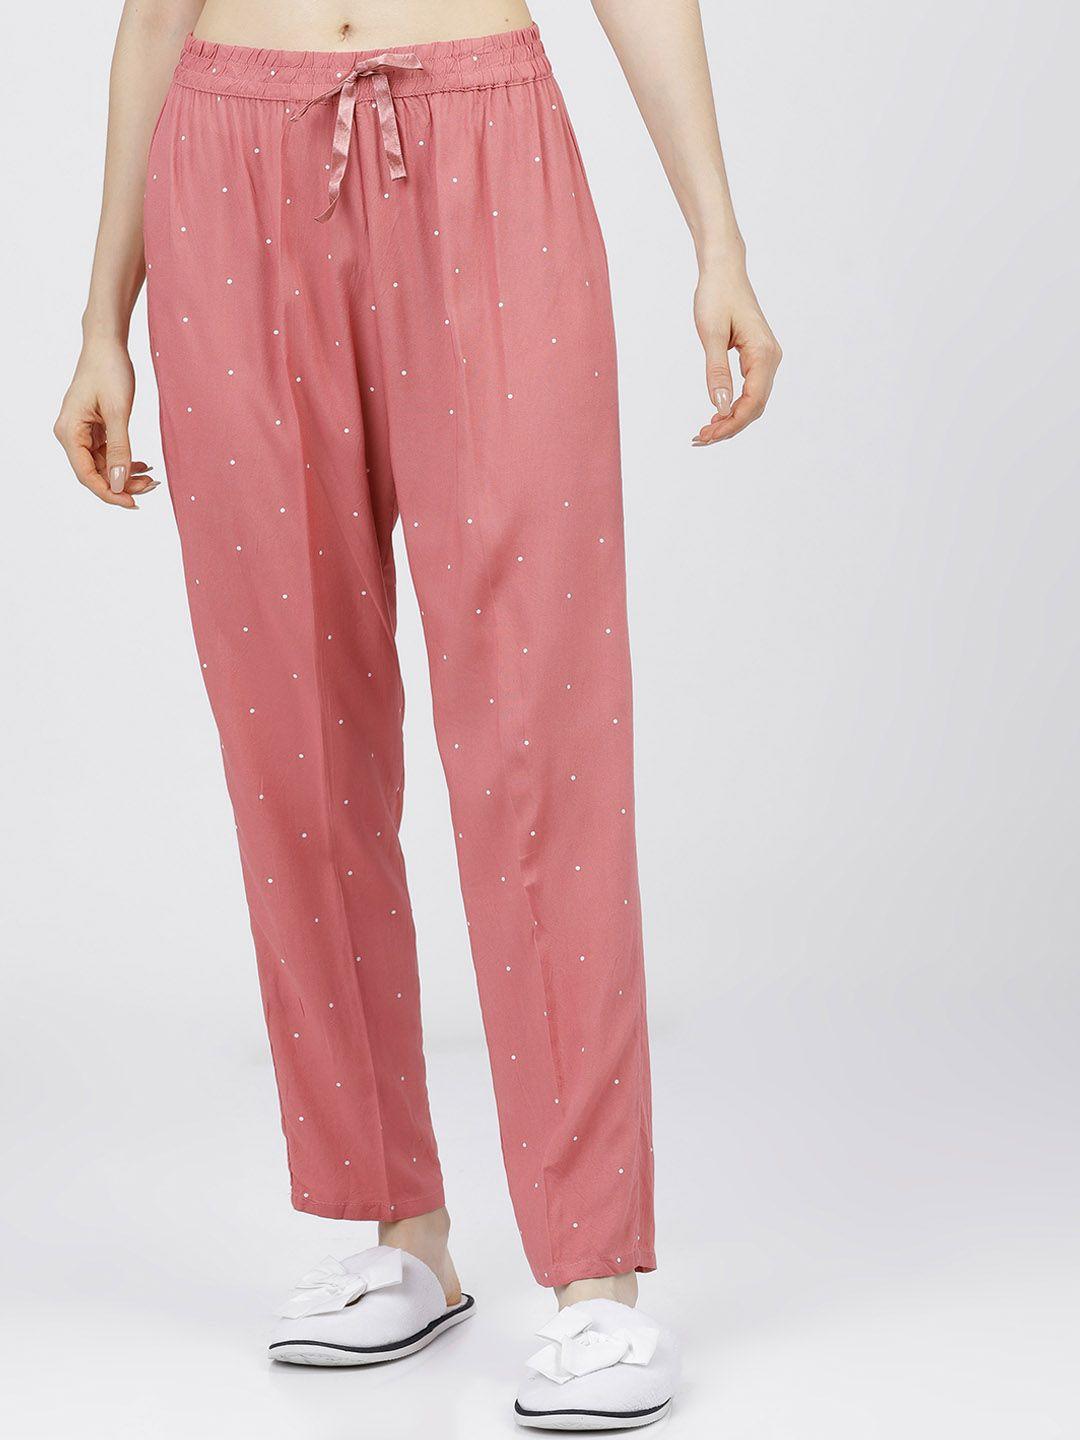 tokyo talkies women pink & white printed loung pants